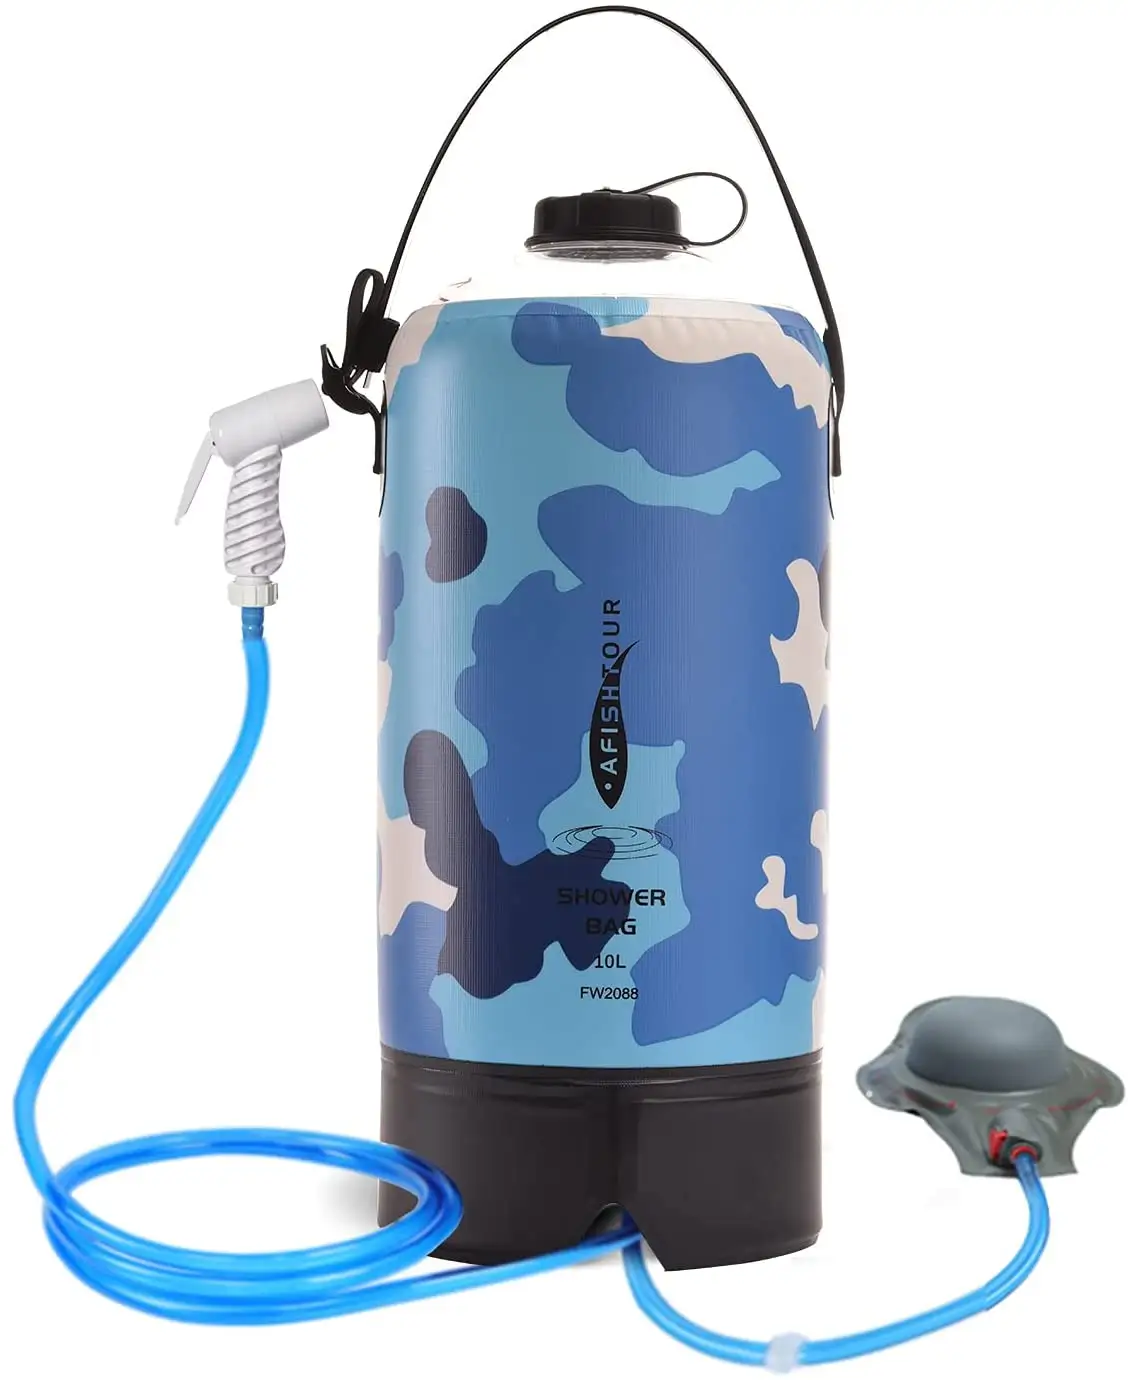 10L складной лагерь душ рюкзак с солнечной энергией водонепроницаемый портативный душ на открытом воздухе спортивная сумка для воды для кемпинга, пеших прогулок